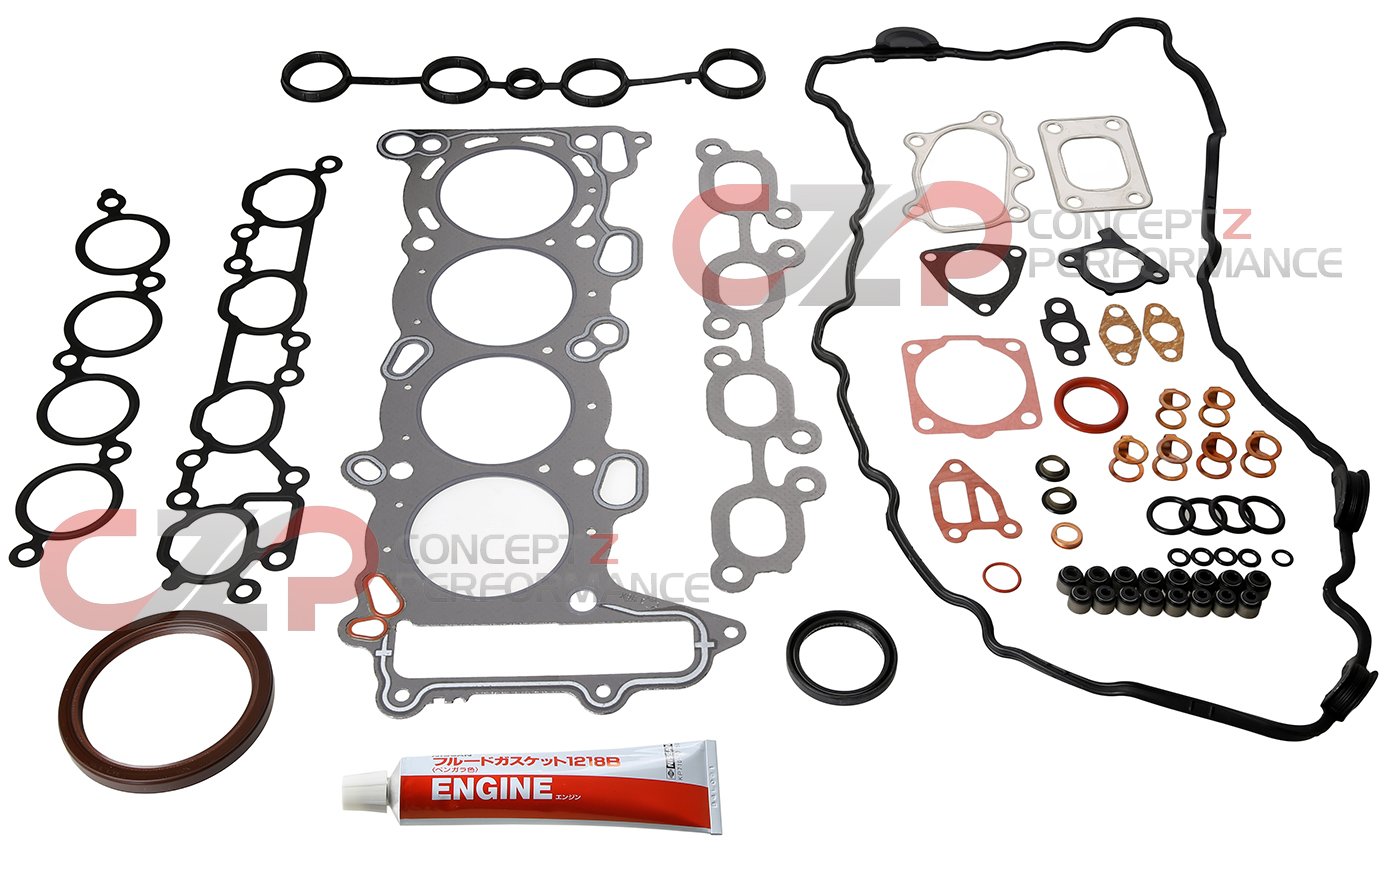 Nissan OEM Engine Gasket Kit SR20DET - Nissan 24SX Silvia S15